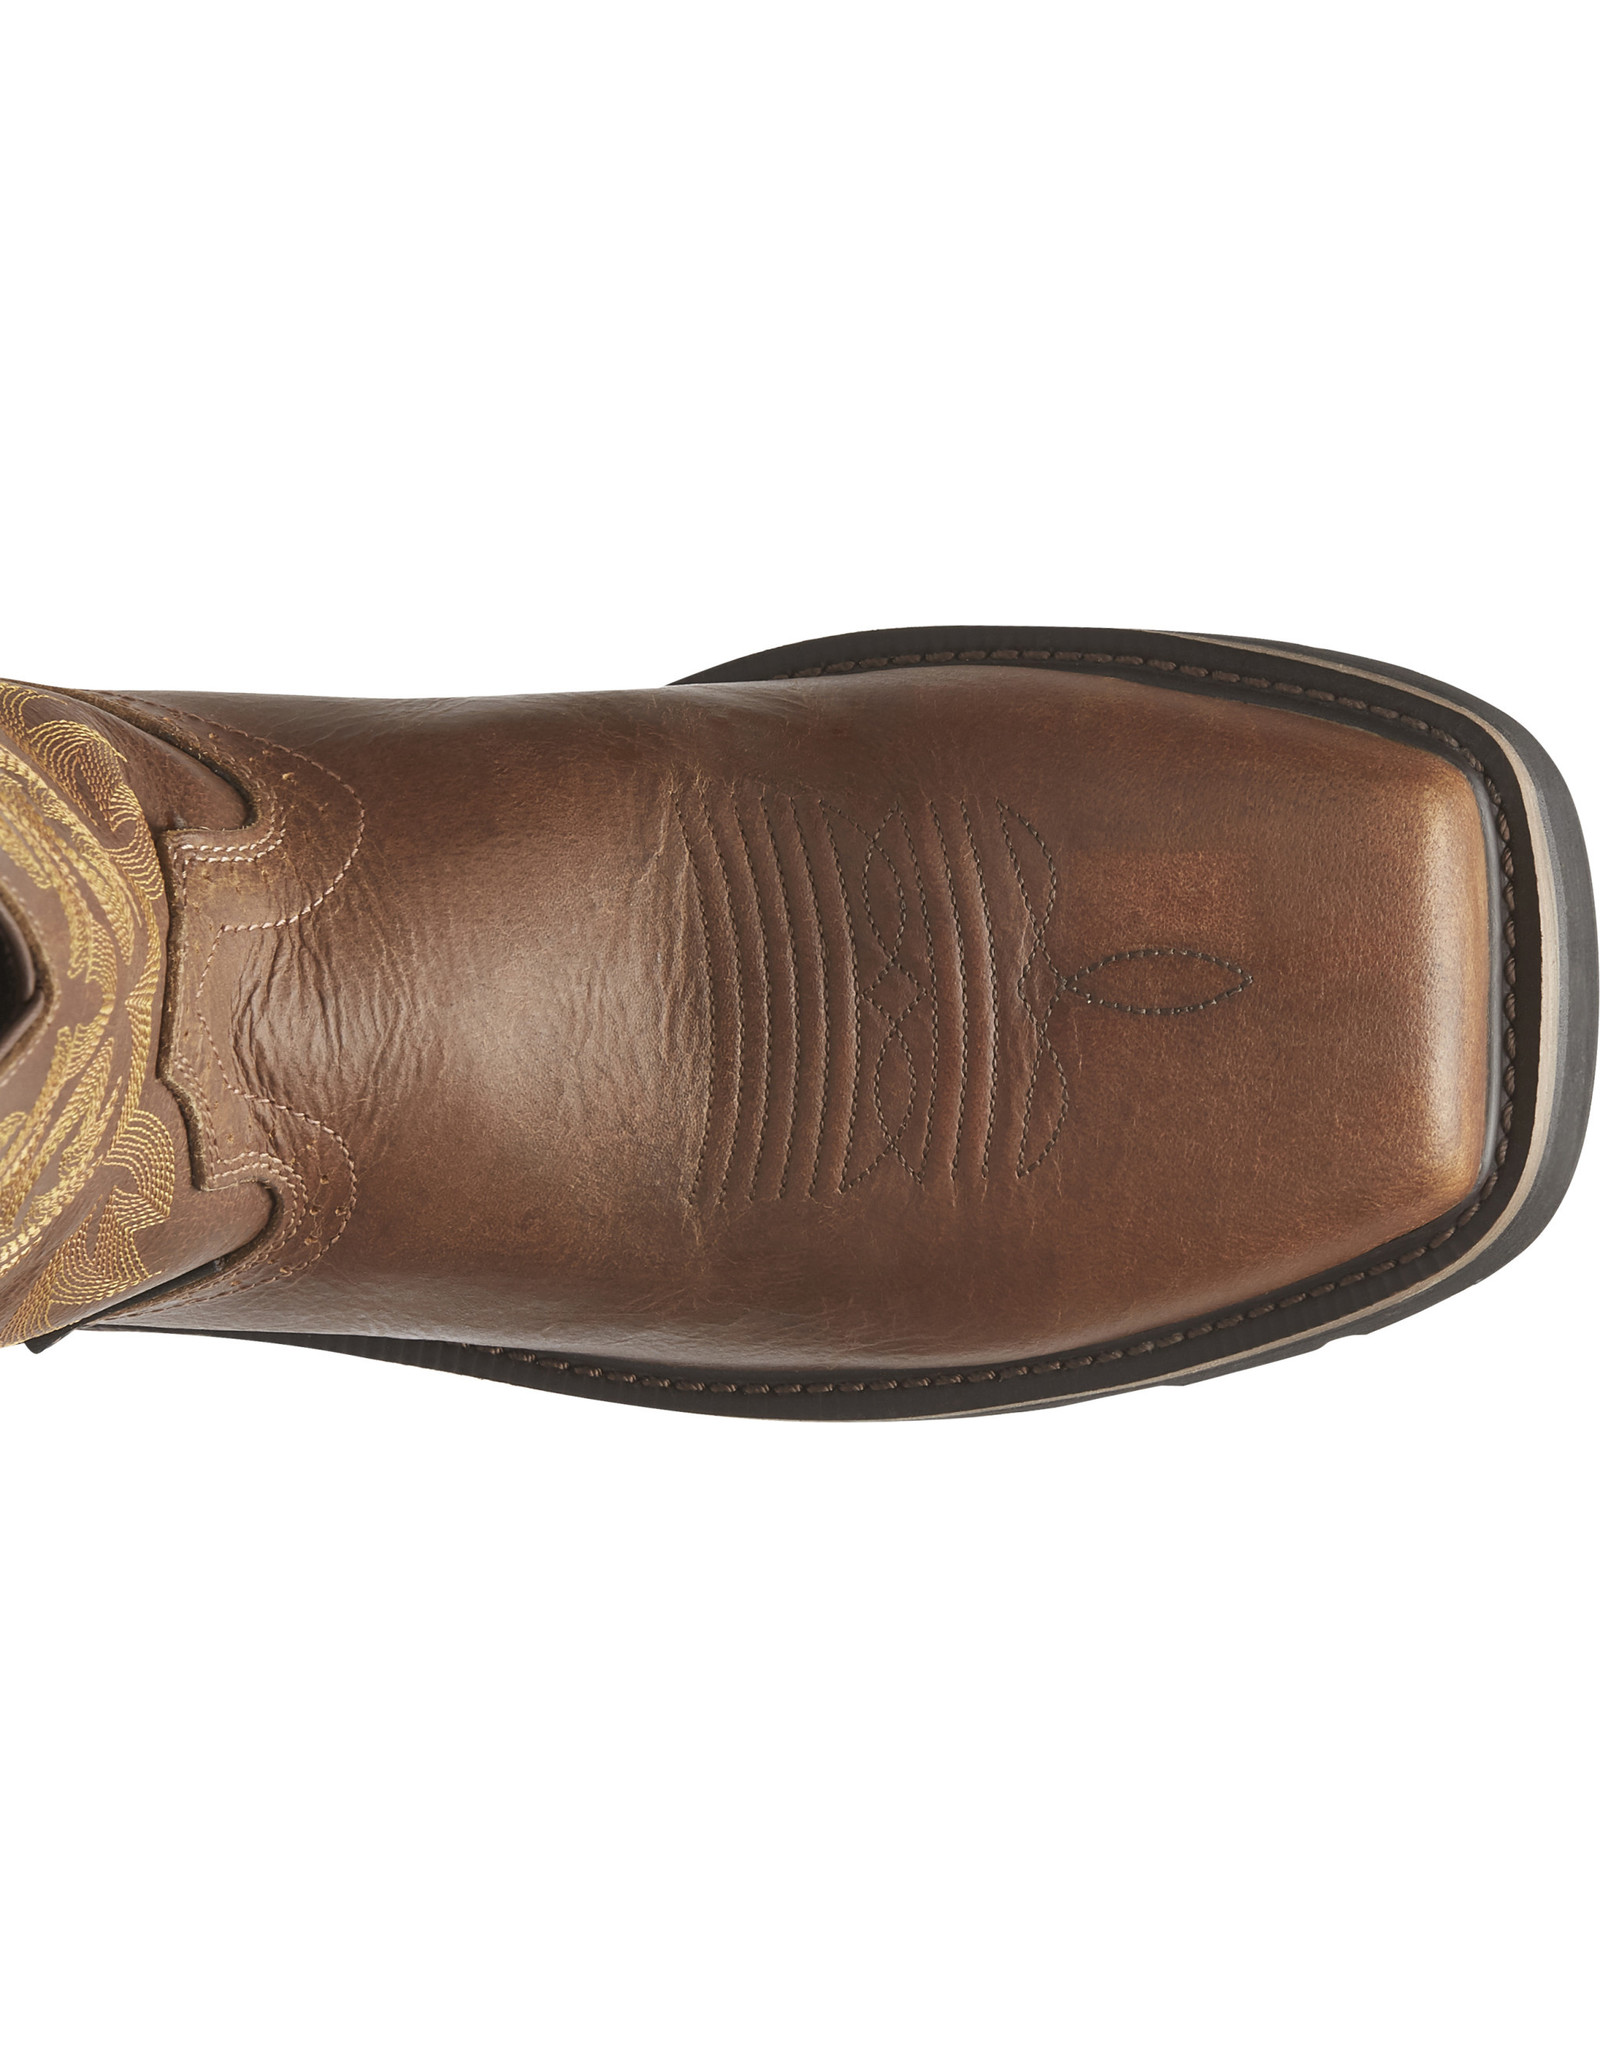 Justin Men's Handler SE4824 Composite Toe Work Boots